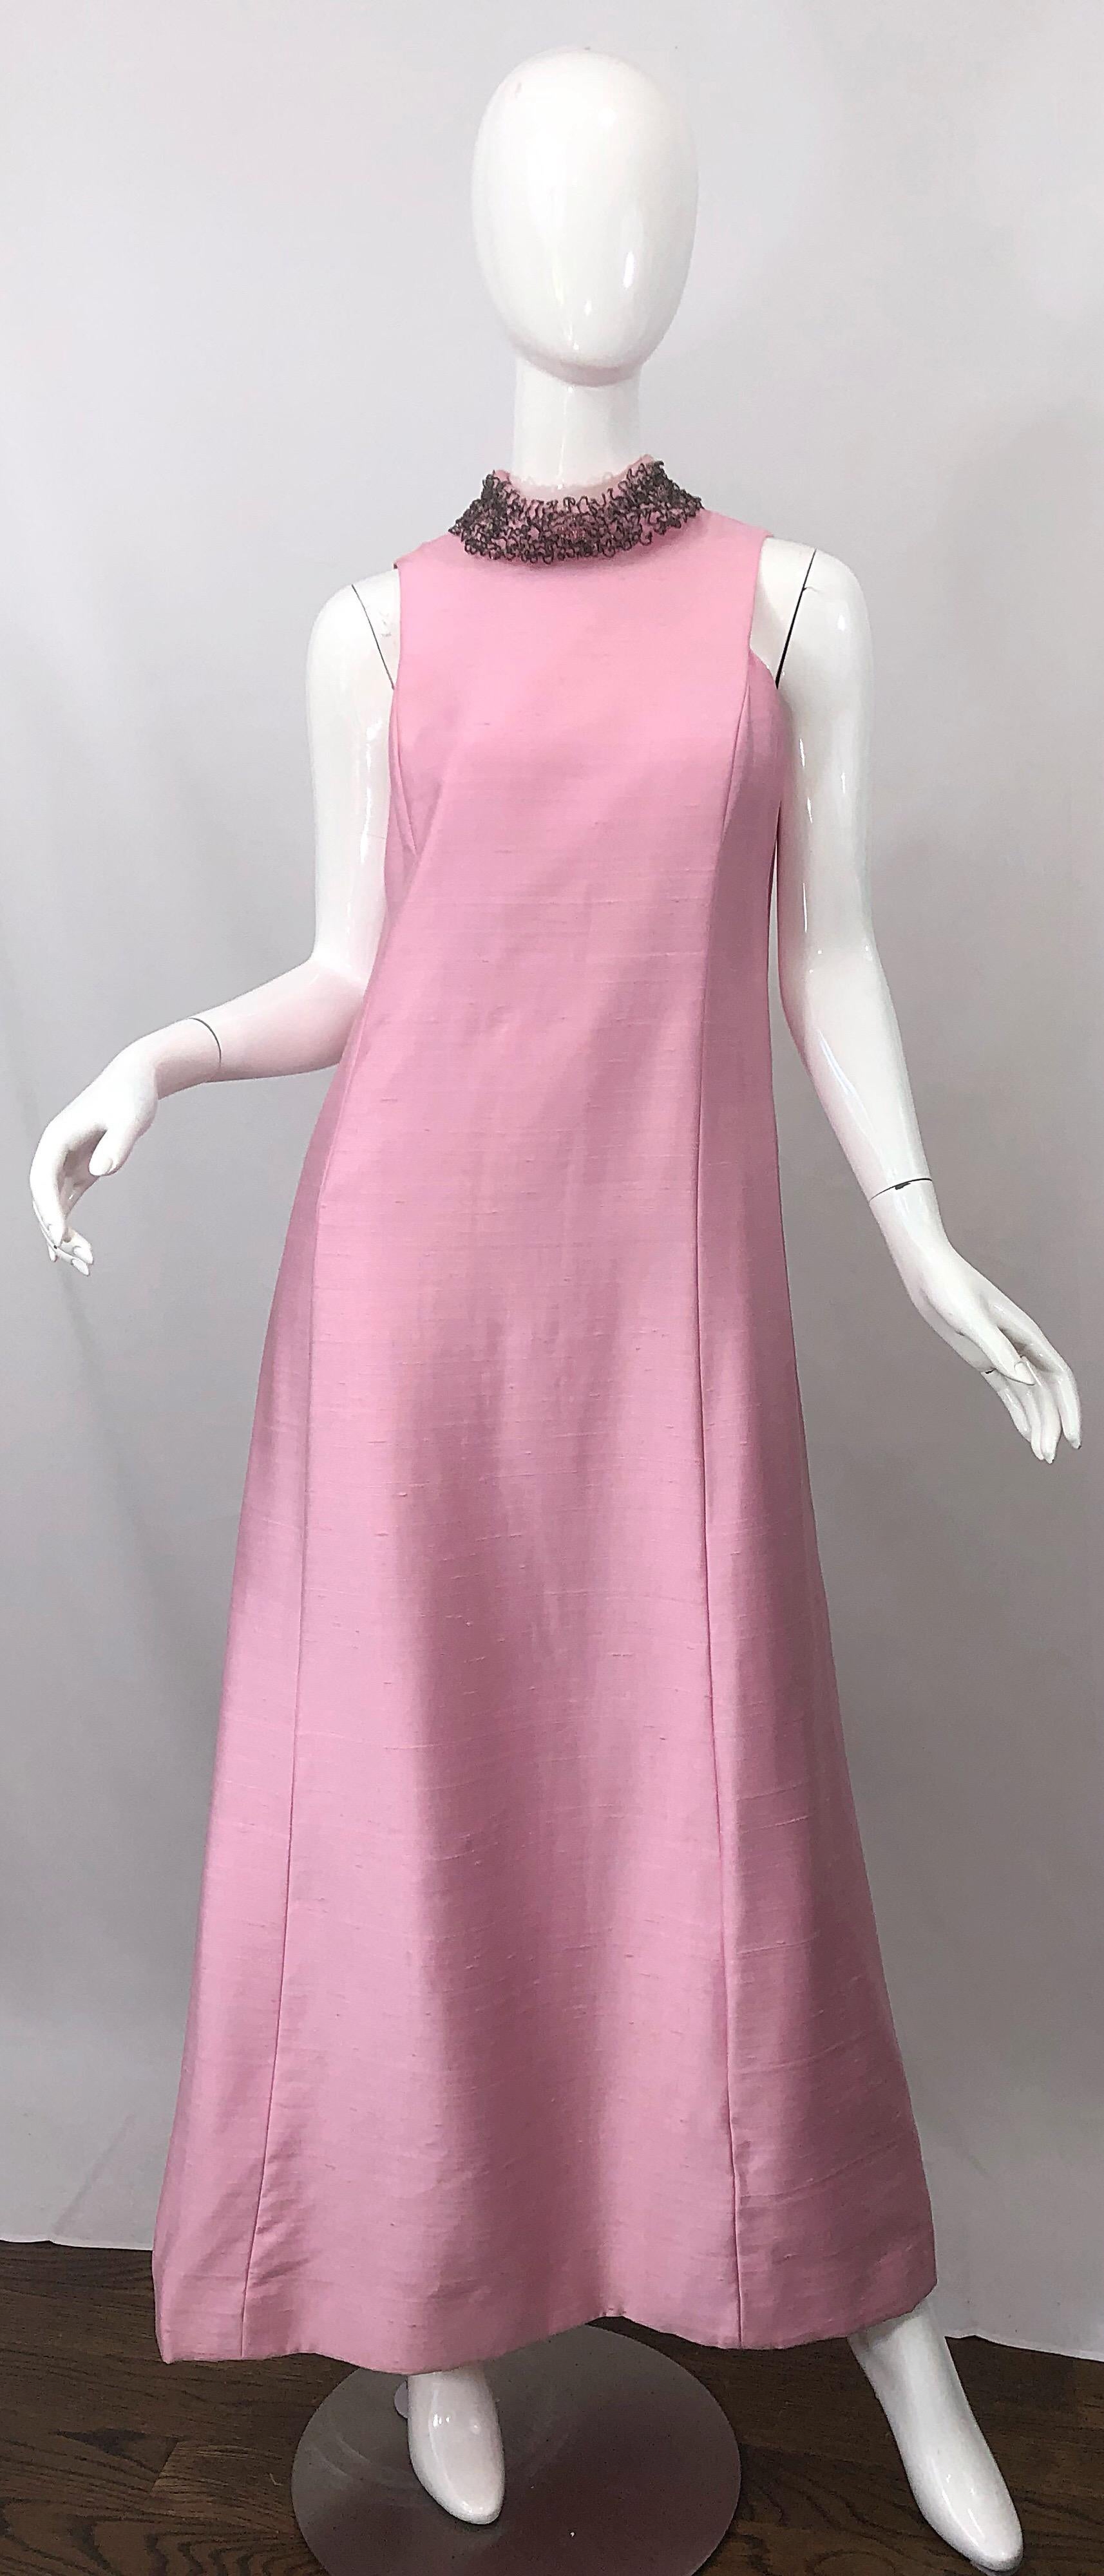 Magnifique ensemble robe et veste SAKS 5th AVENUE des années 1960 en shantung de soie rose clair perlé ! La robe présente un corsage ajusté et une jupe ample et souple. Le collier comporte des centaines de perles et de strass cousus à la main. La